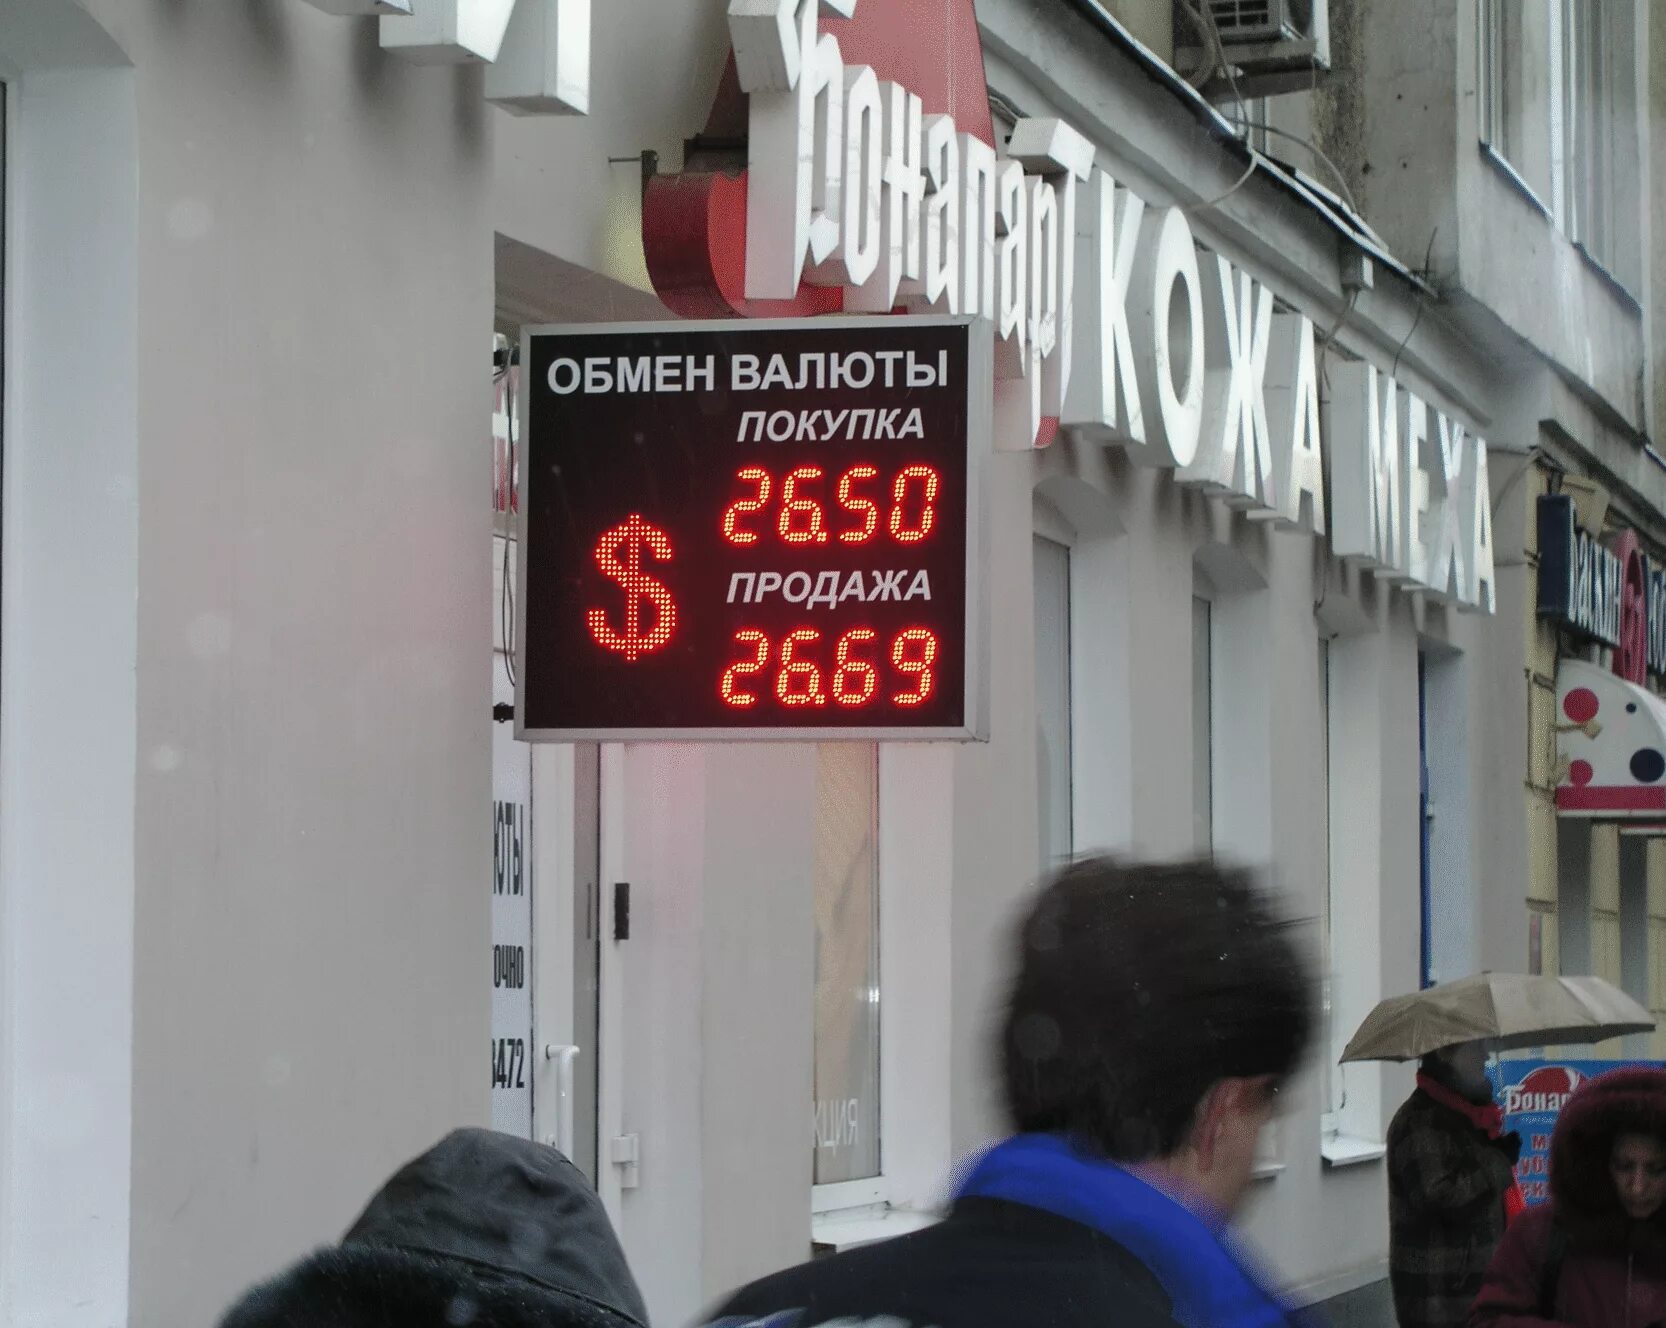 Купить доллары в москве сегодня обменники